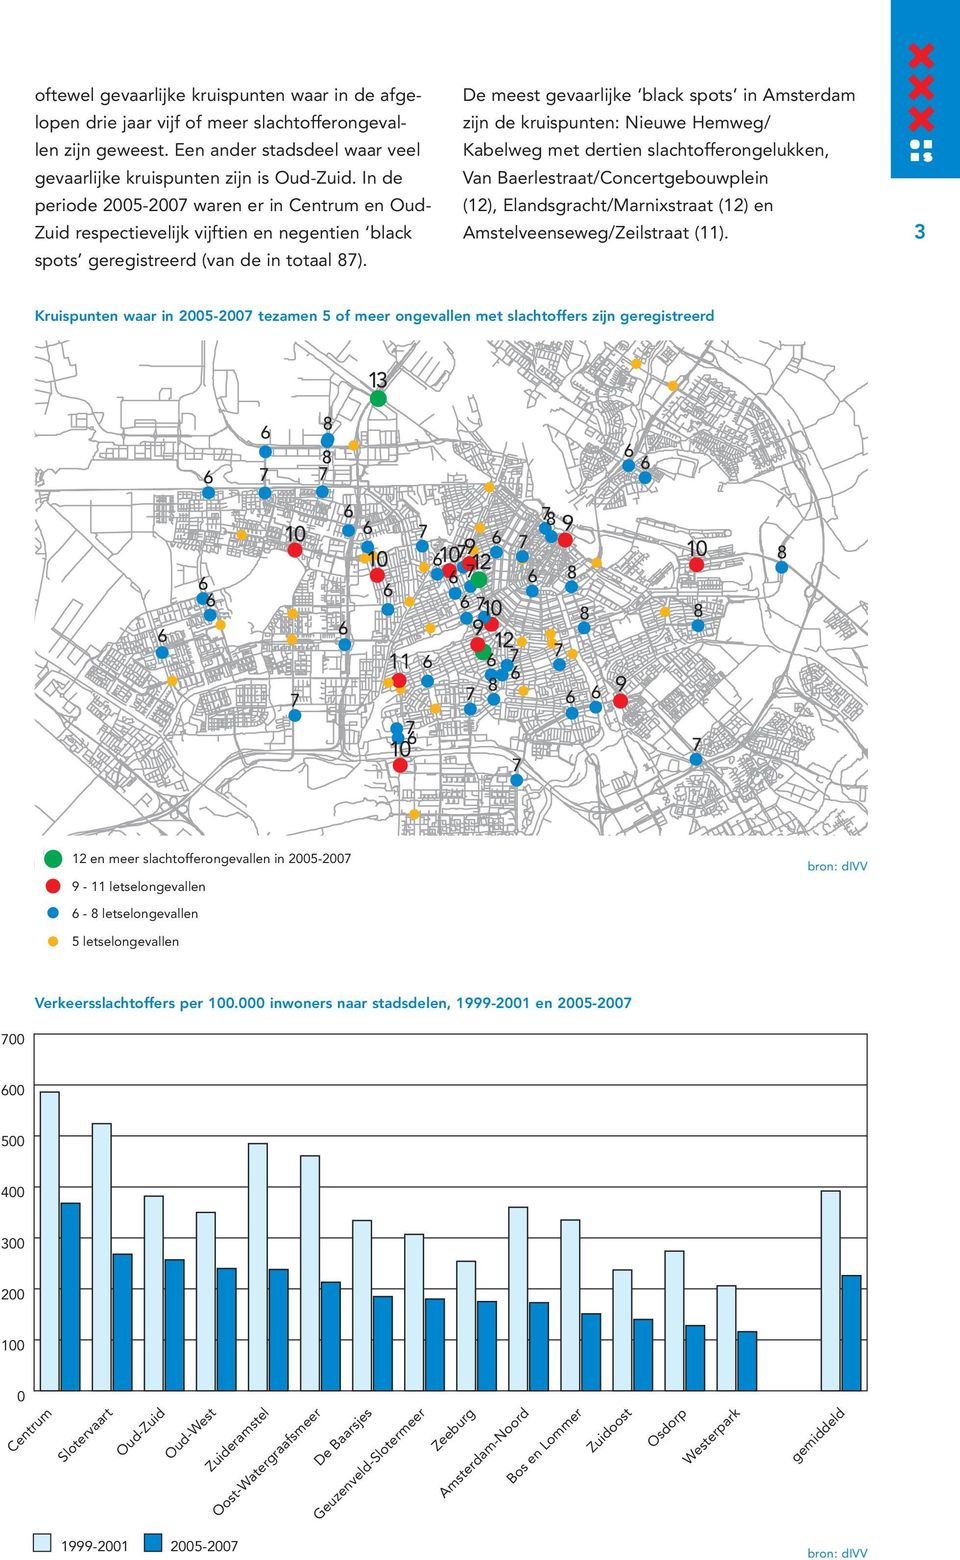 De meest gevaarlijke black spots in Amsterdam zijn de kruispunten: Nieuwe Hemweg/ Kabelweg met dertien slachtofferongelukken, Van Baerlestraat/Concertgebouwplein (12), Elandsgracht/Marnixstraat (12)